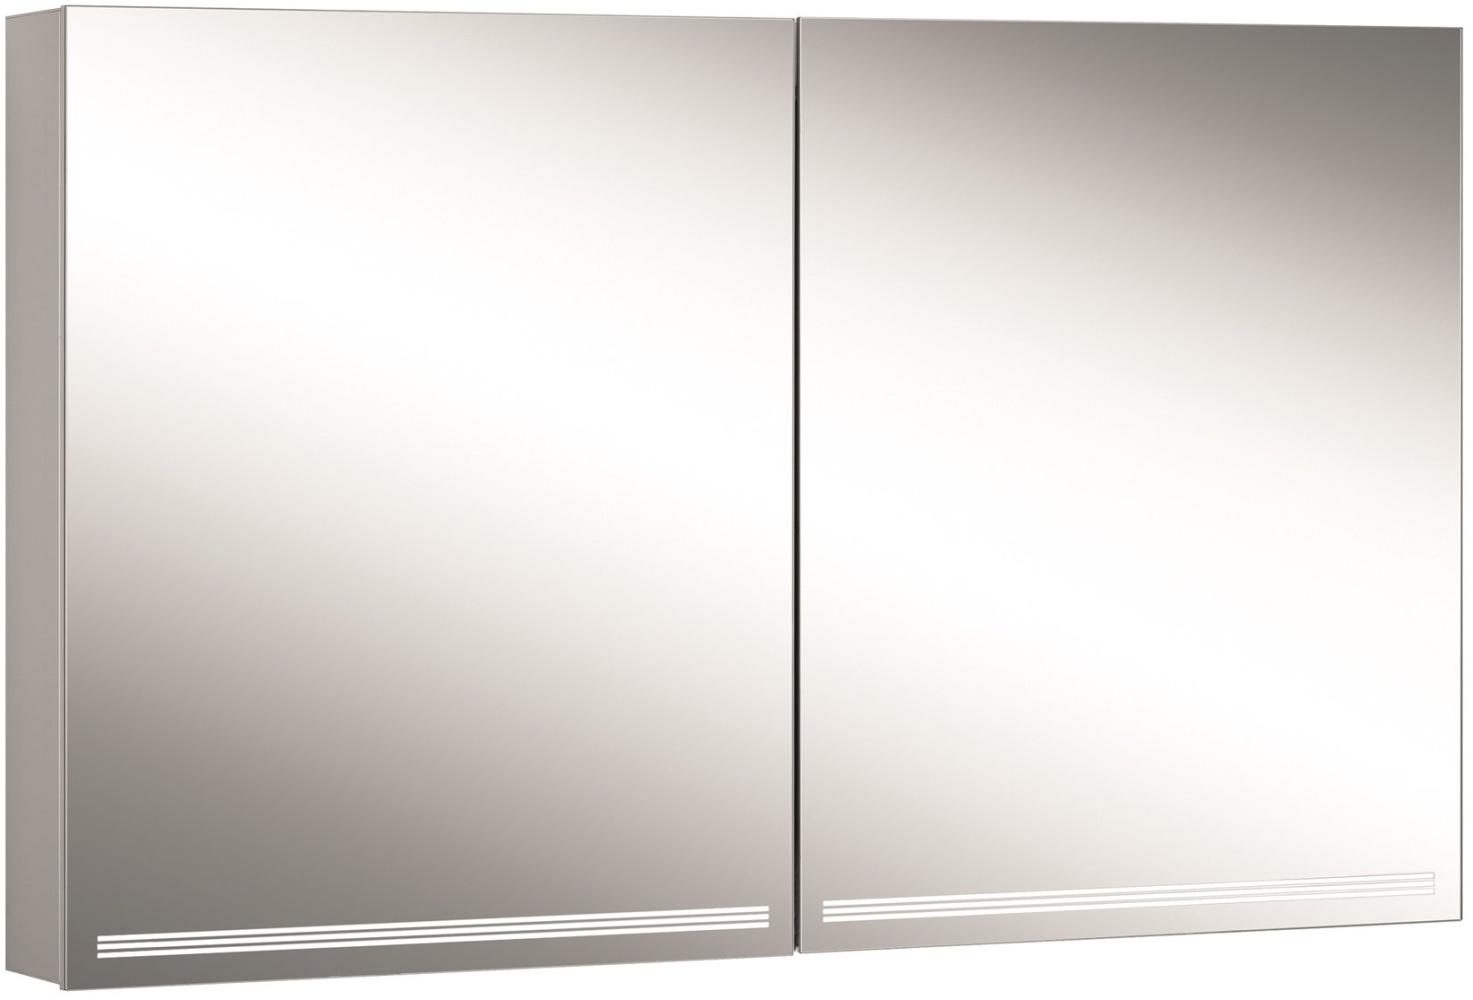 Schneider GRACELINE LED Lichtspiegelschrank, 2 Doppelspiegeltüren, 120x70x12cm, 116. 520, Ausführung: EU-Norm/Korpus silber eloxiert - 116. 520. 02. 50 Bild 1